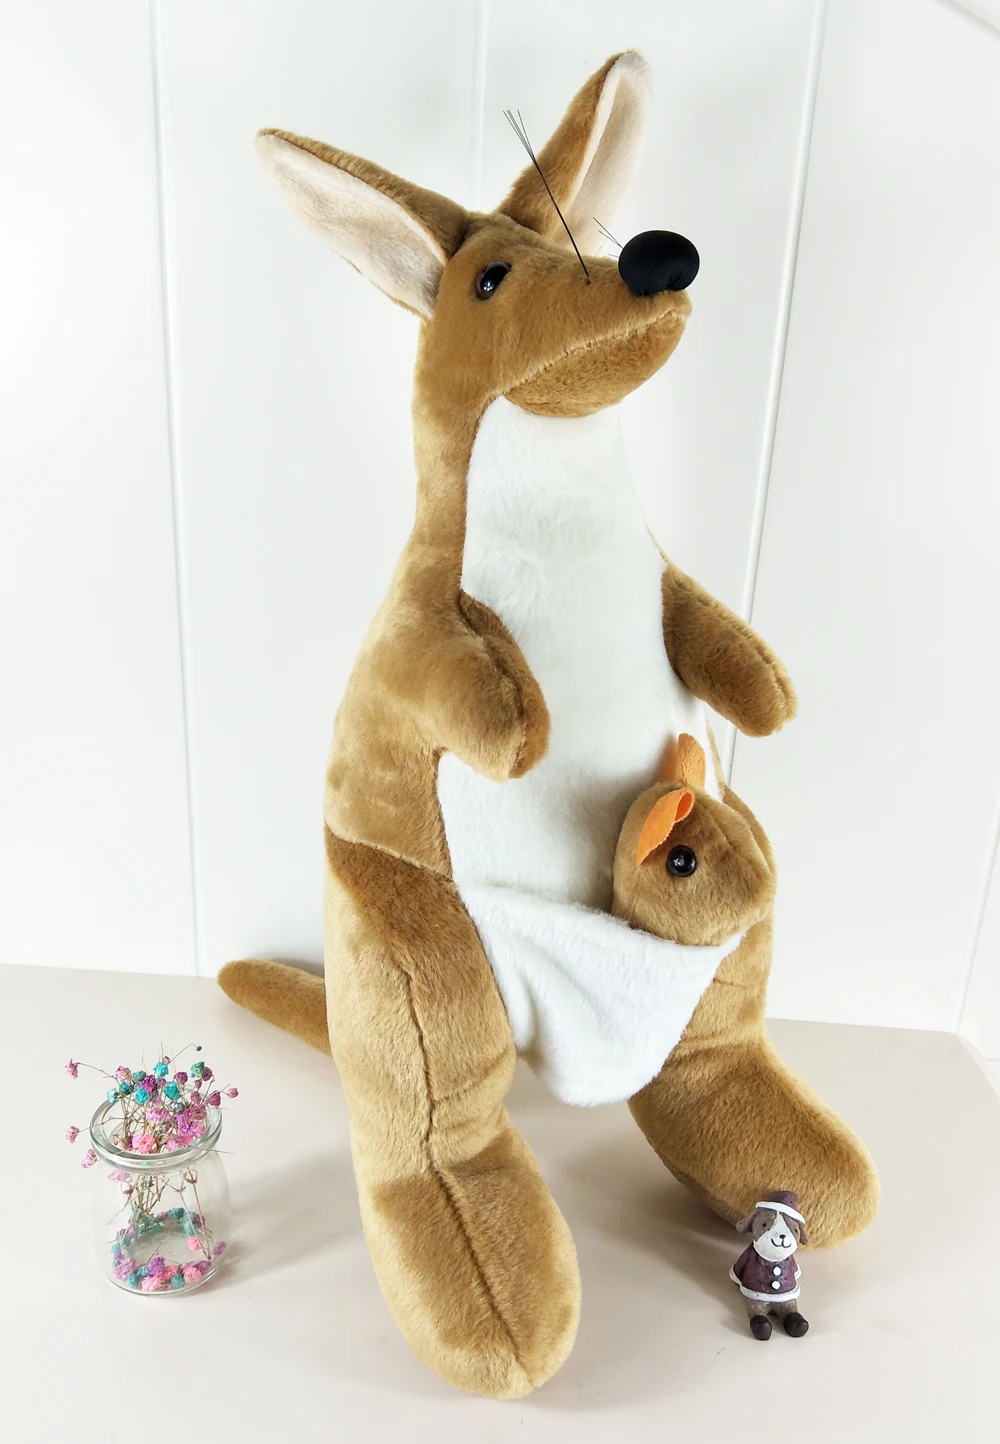 BOLAFYNIA высокое моделирование кукла плюшевые игрушки кенгуру подарок на день рождения День Святого Валентина мероприятия подарок